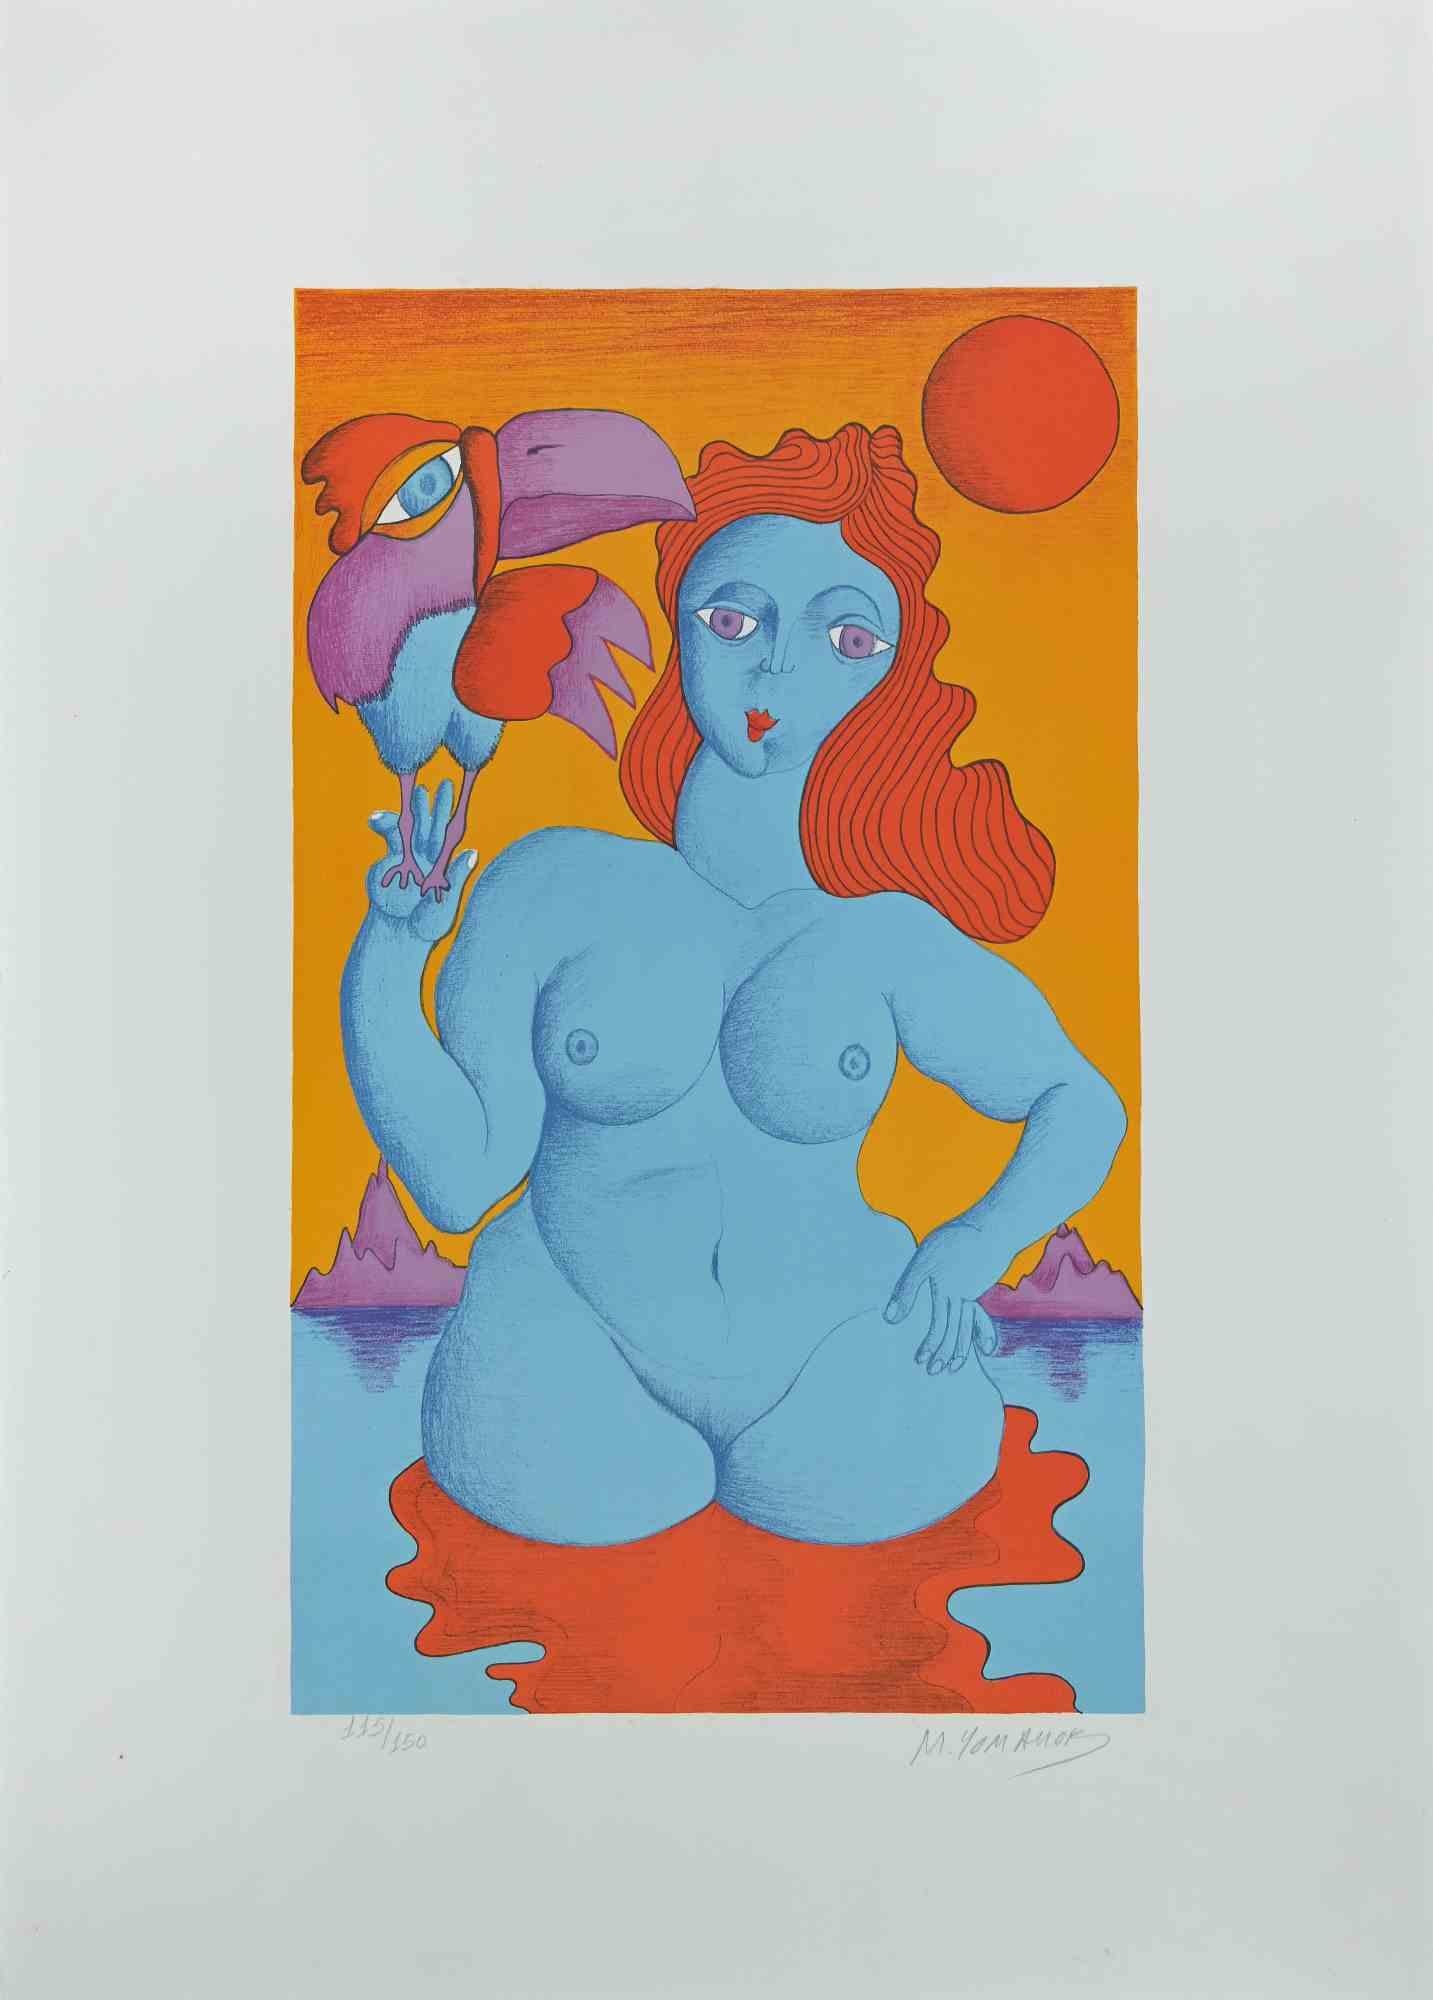 Frau mit Papagei  ist eine sehr farbenfrohe Lithographie des Künstlers Michael Ciomakov aus den 1970er Jahren.

Handsigniert mit Bleistift in der unteren Mitte. Links unten nummeriert. Auflage 115/150.

Gute Bedingungen.

Diese zeitgenössische